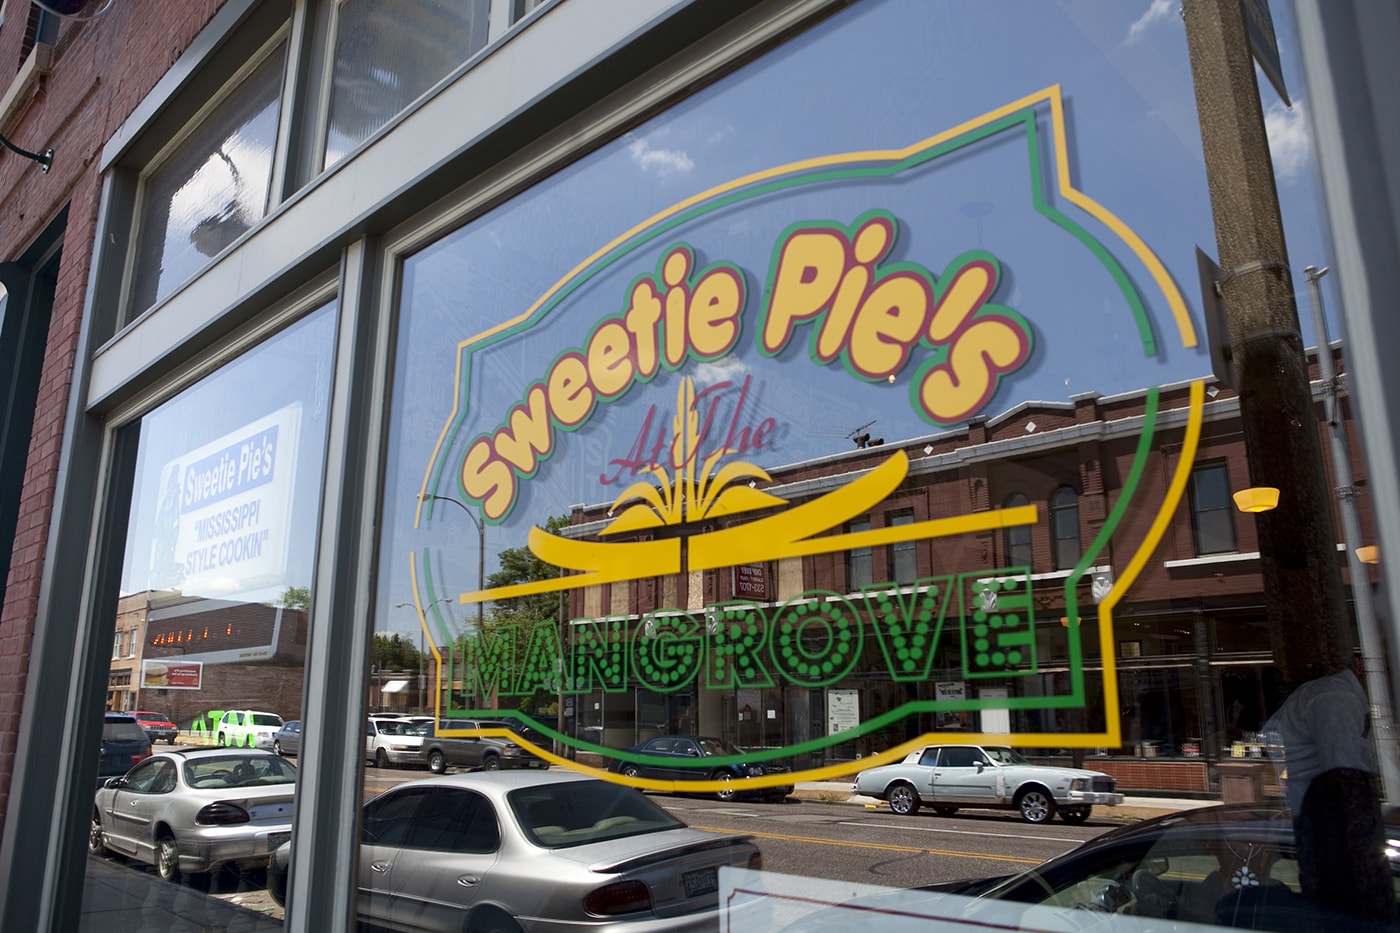 Sweetie Pie's - A Lunch Stop in St. Louis, Missouri